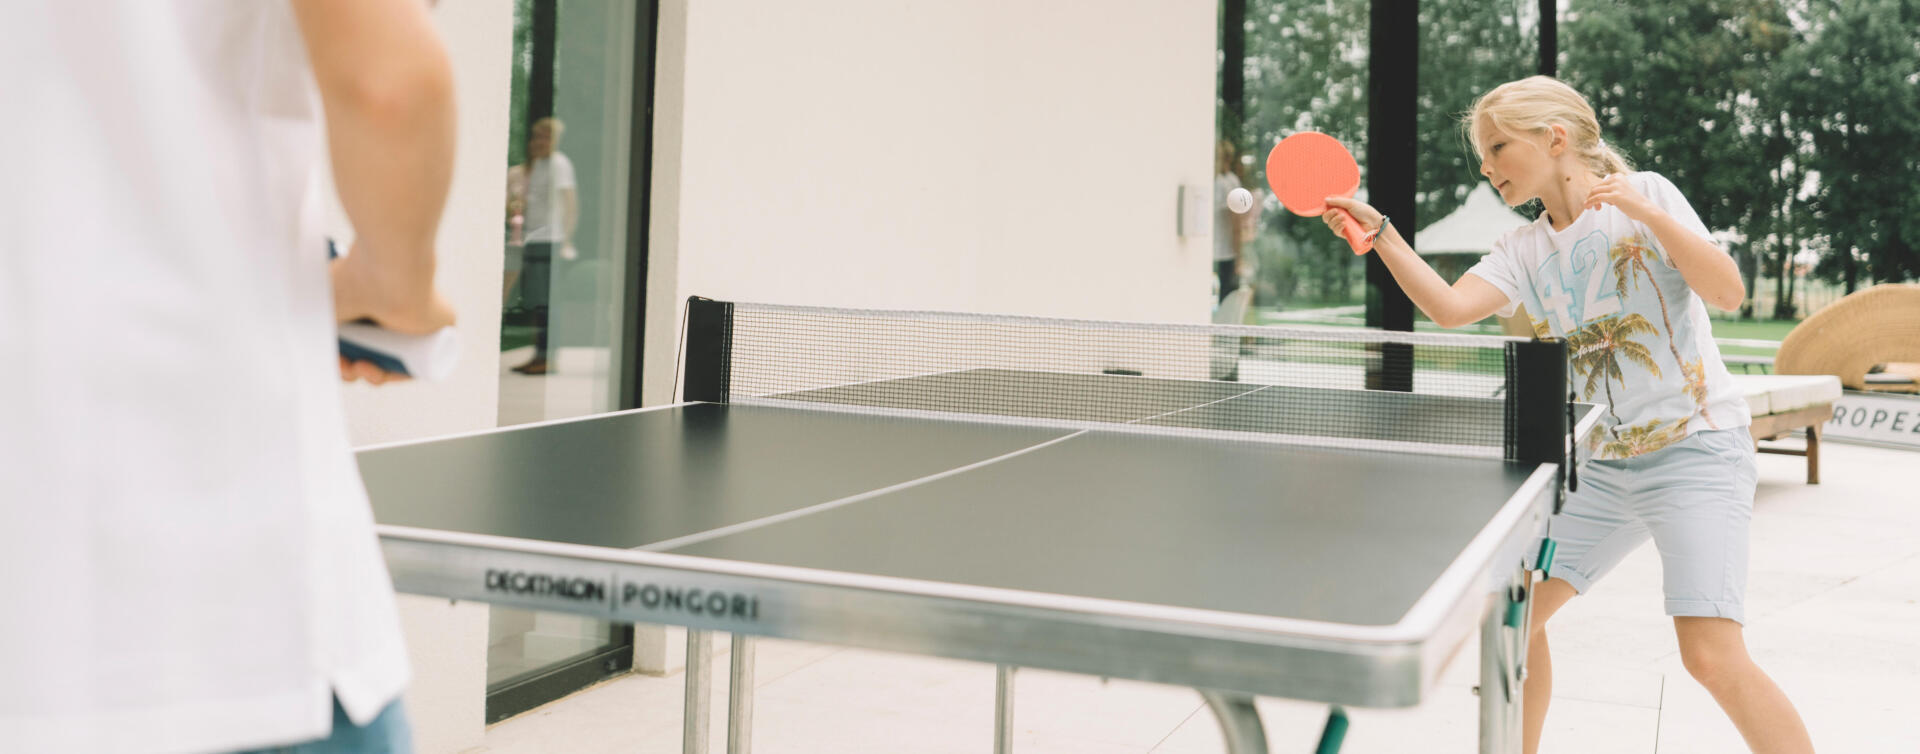 Comment démarrer le ping-pong ?